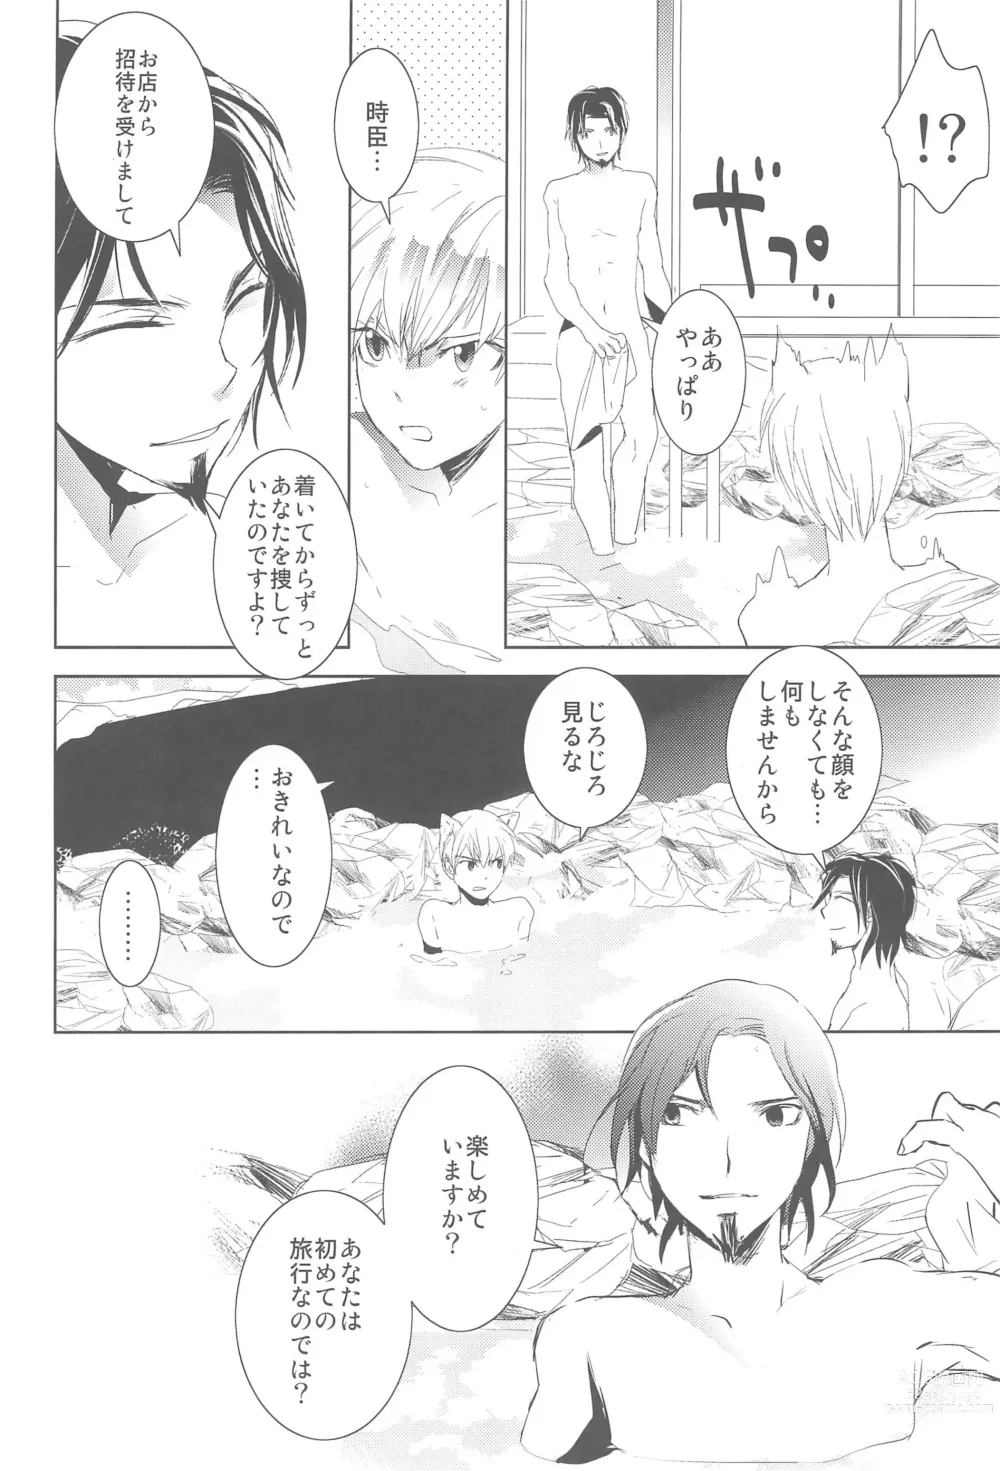 Page 14 of doujinshi Omise no Neko 3.5